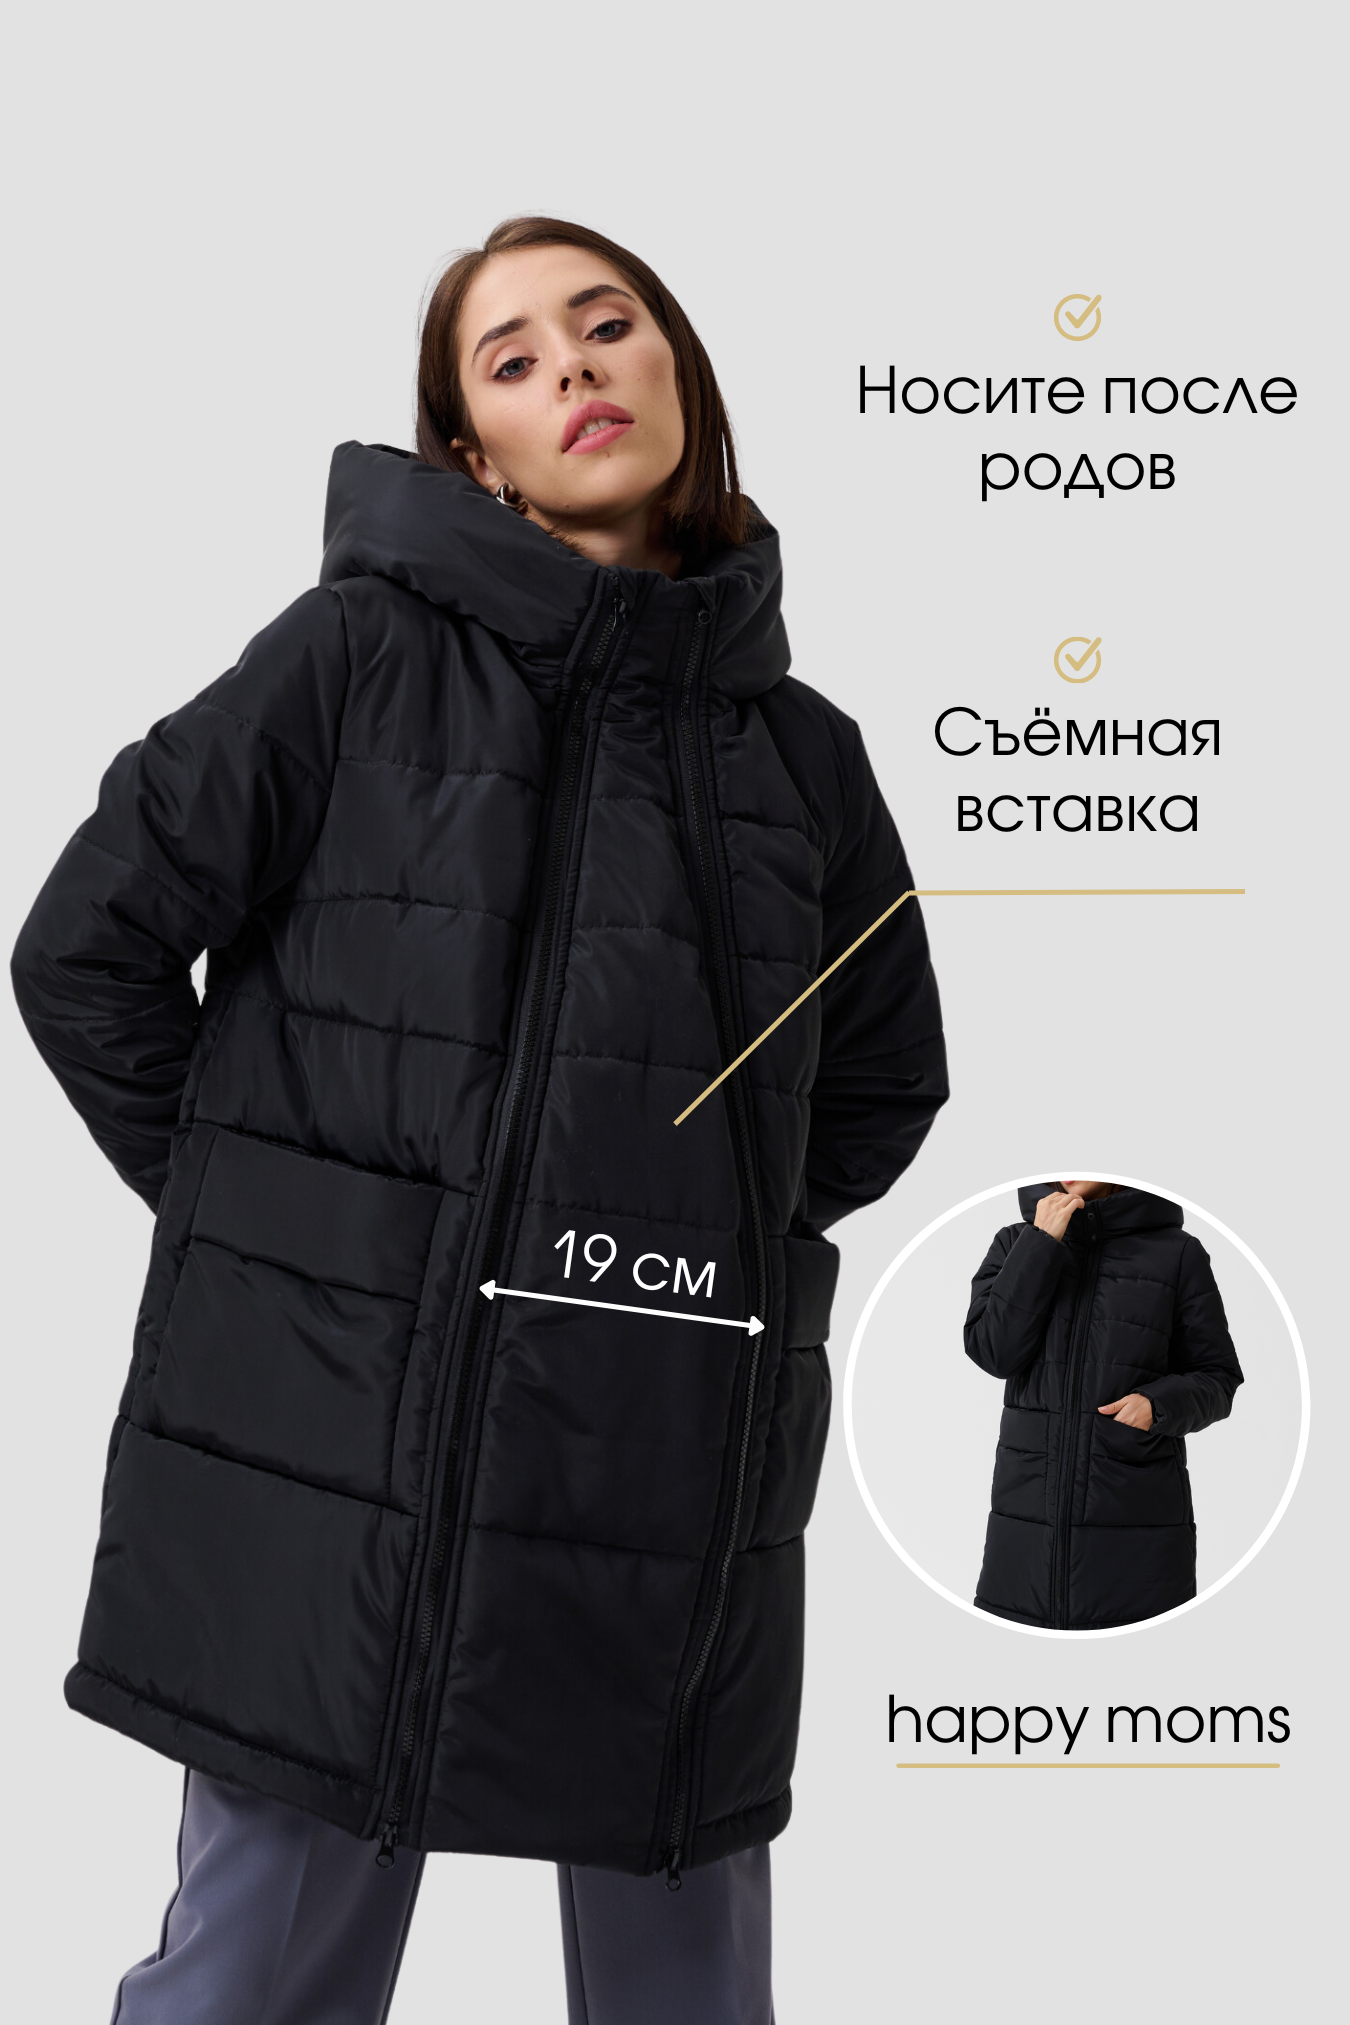 Куртка для беременных женская зимняя теплая верхняя одежда / Happy Moms